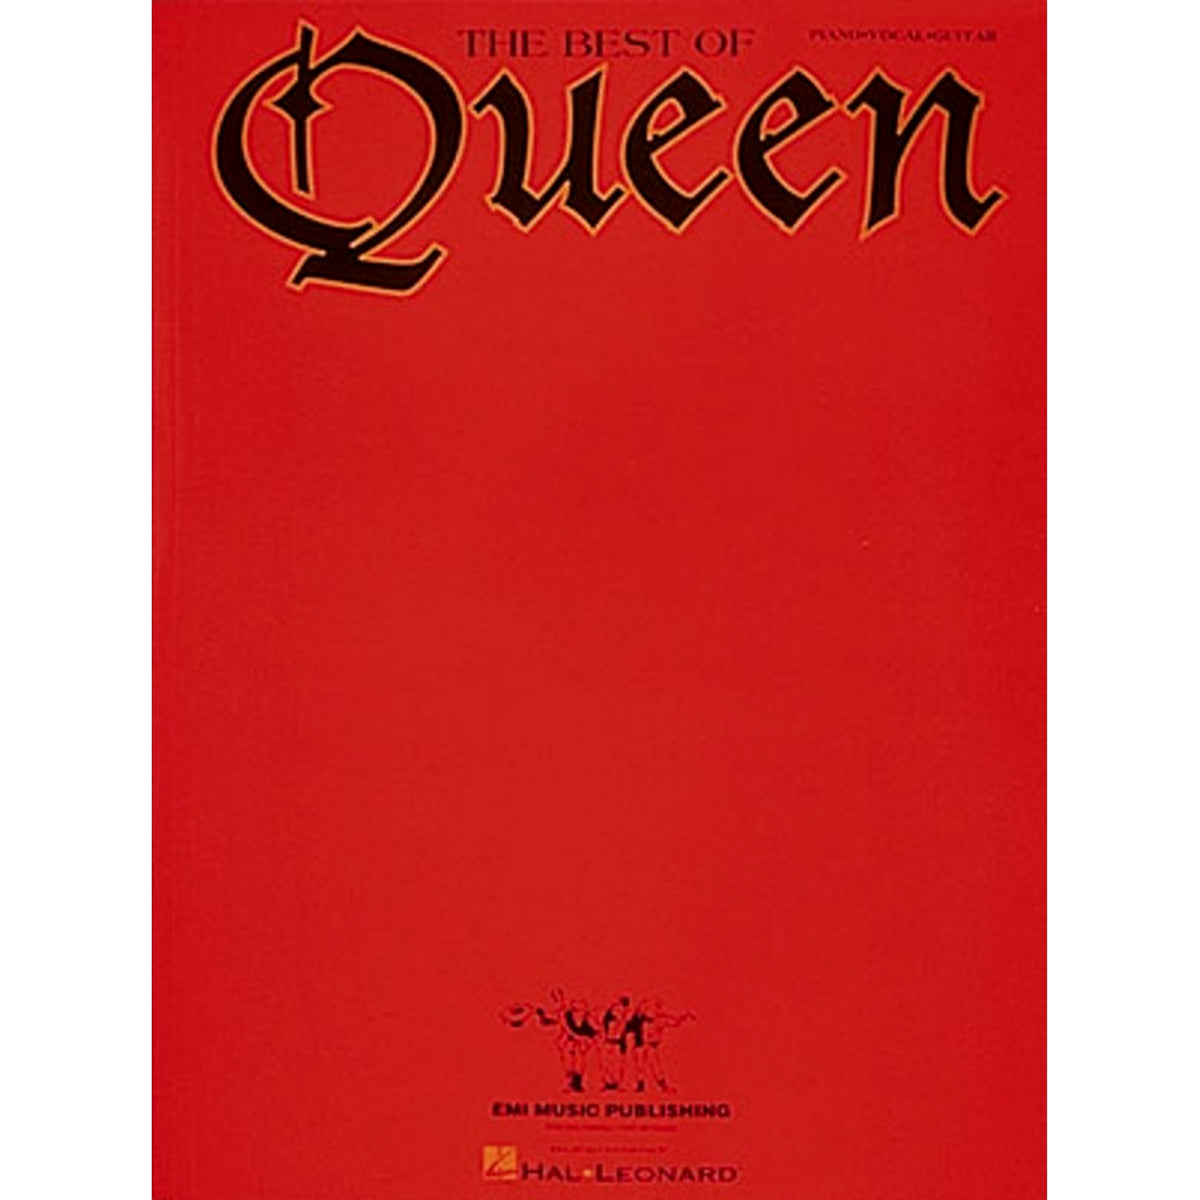 The Best of Queen Song Book